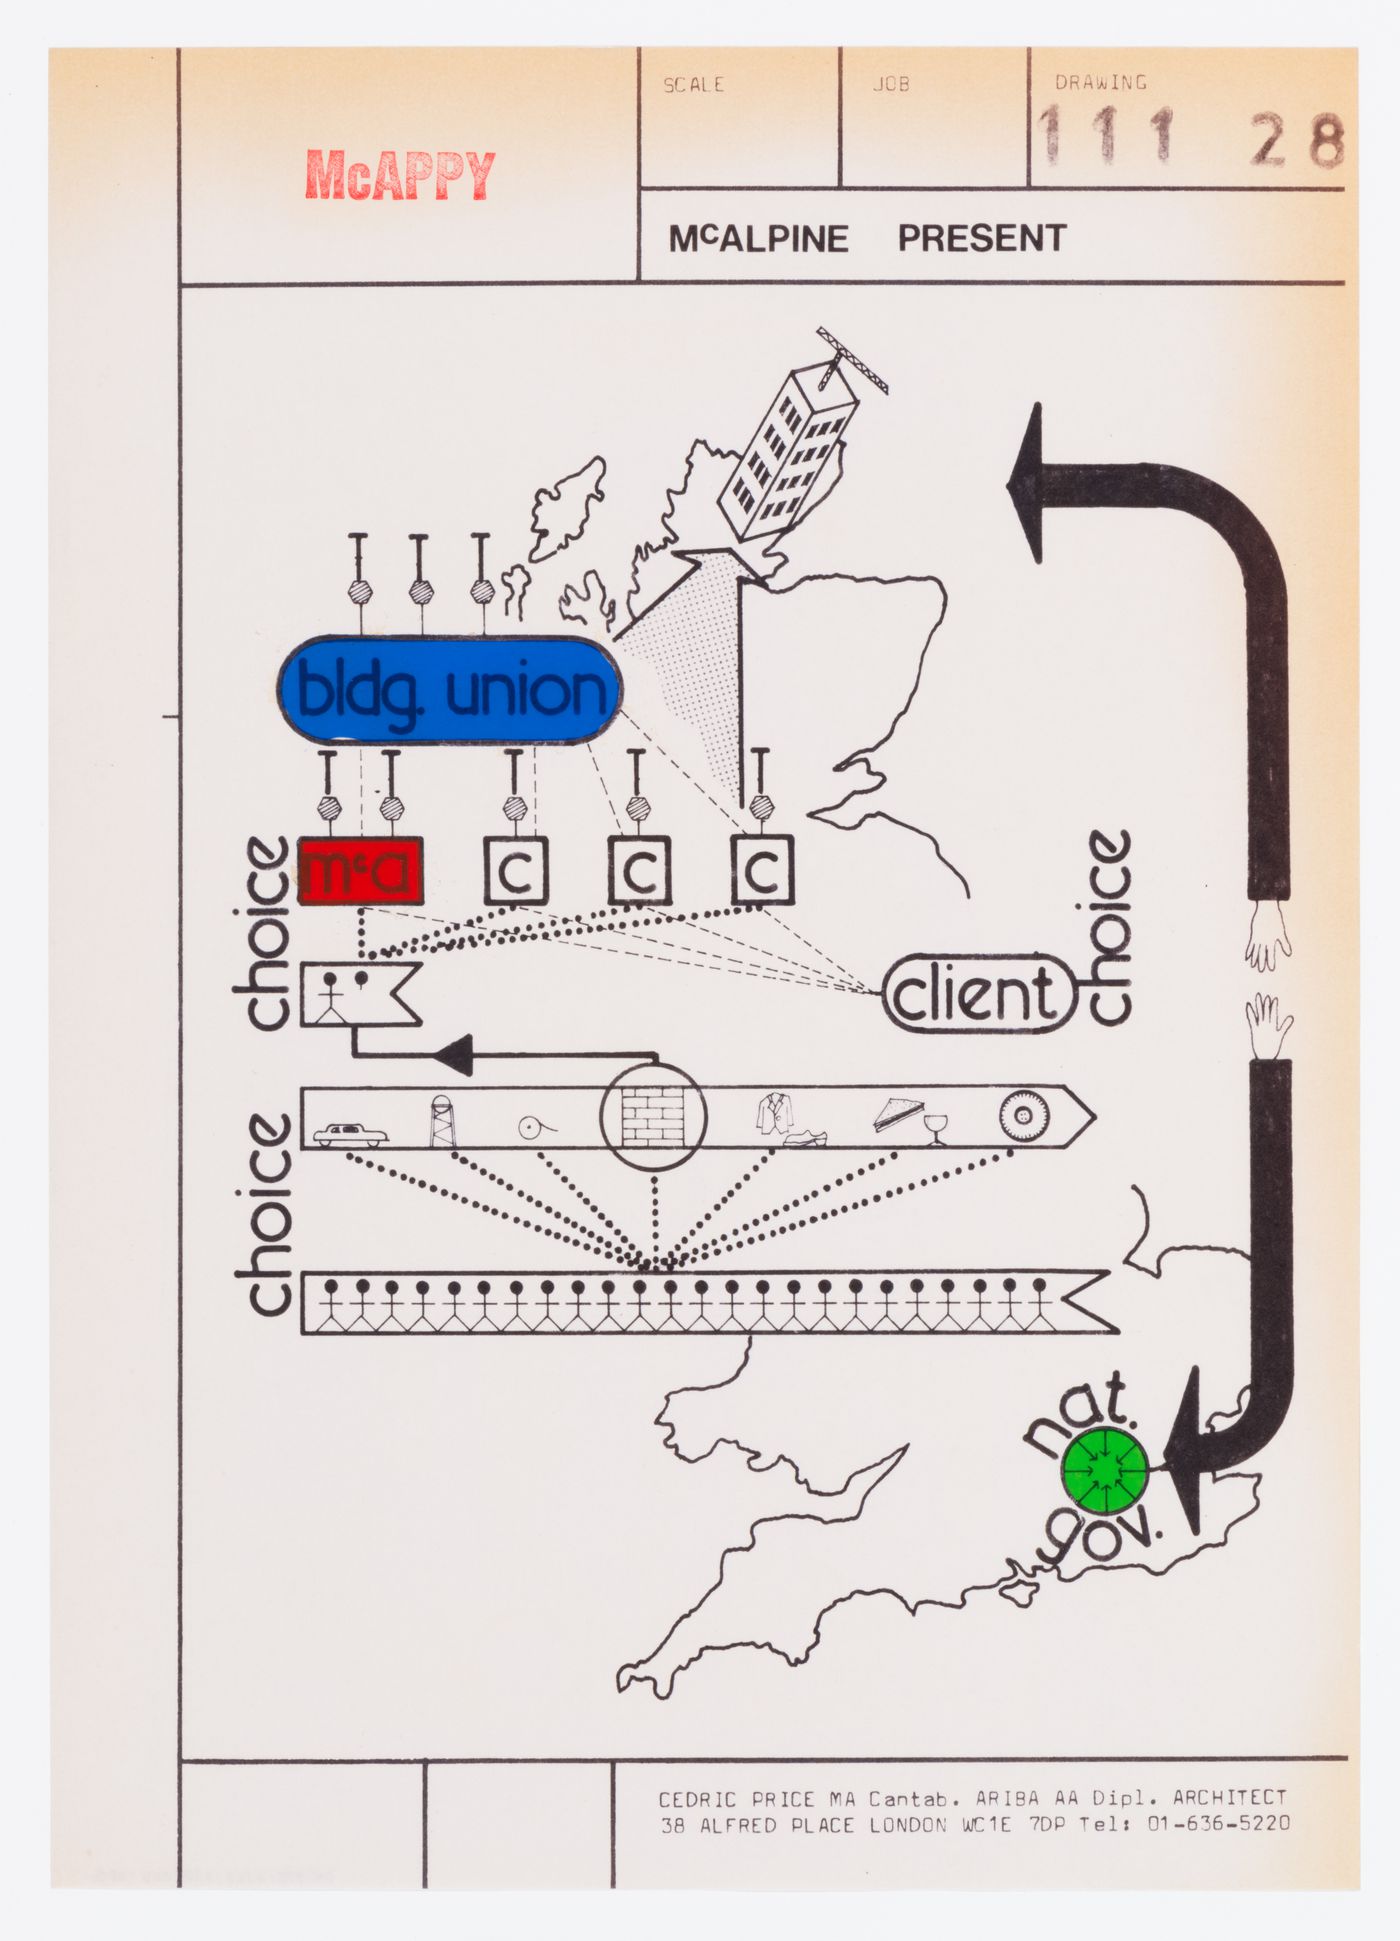 McAppy: diagram illustrating McAlpine present